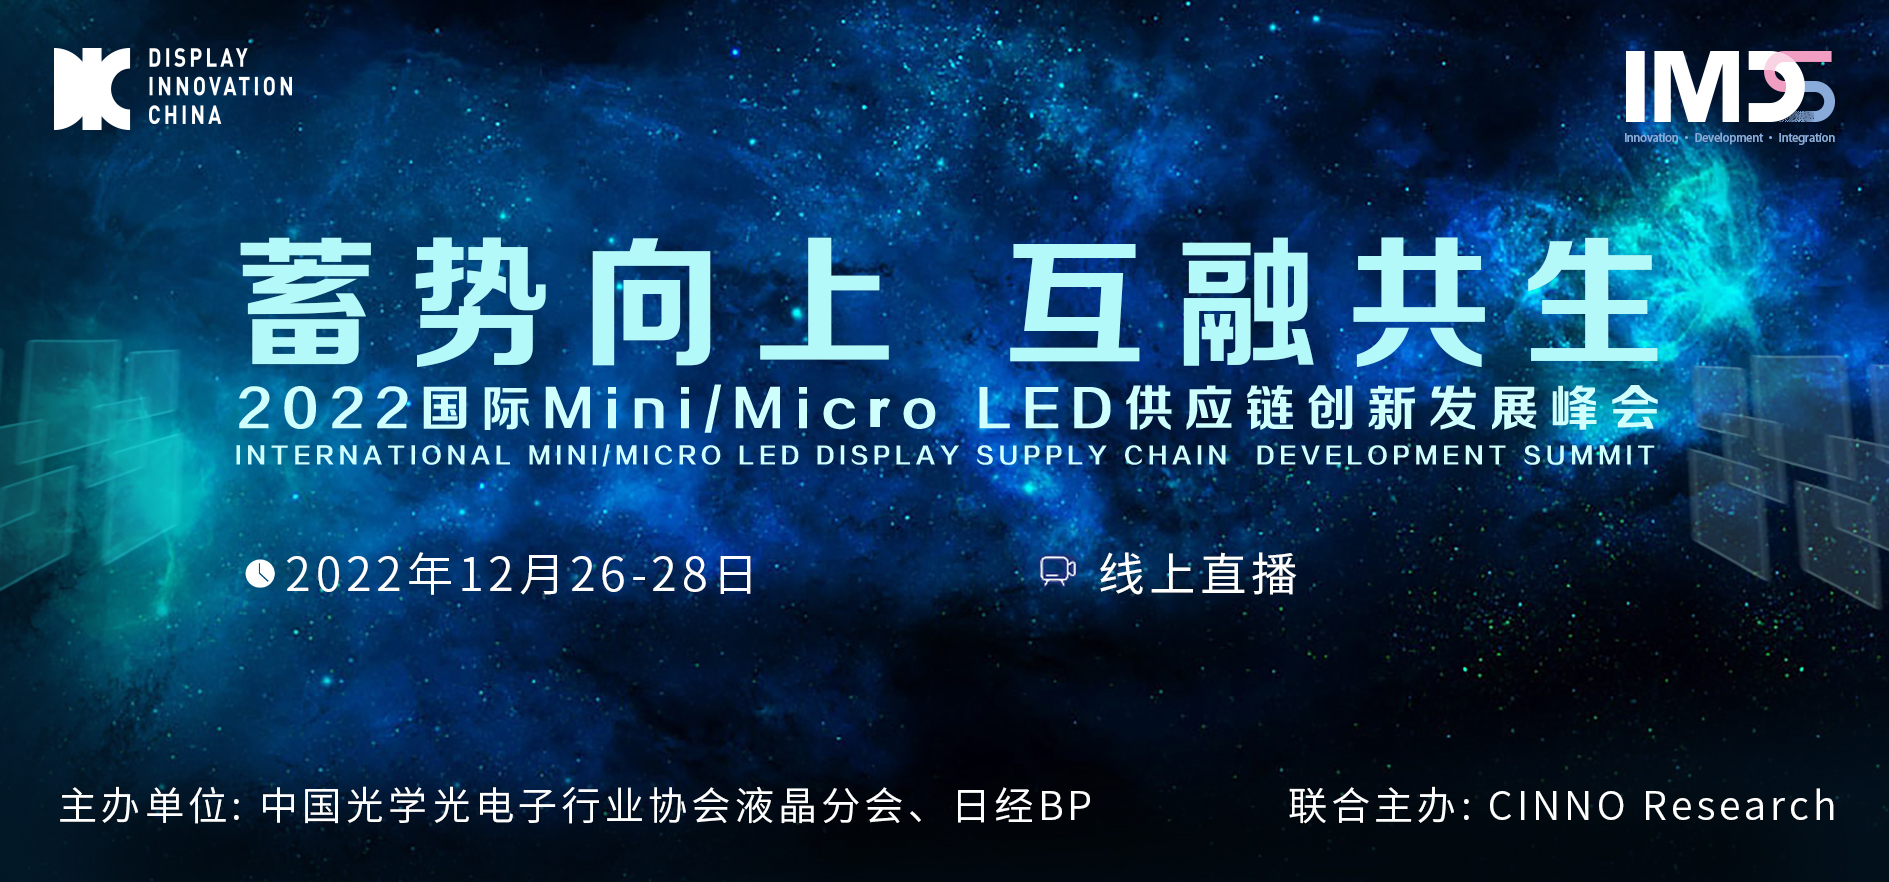 12/26-28 线上直播 | 2022国际Mini/Micro LED供应链创新发展峰会产业周